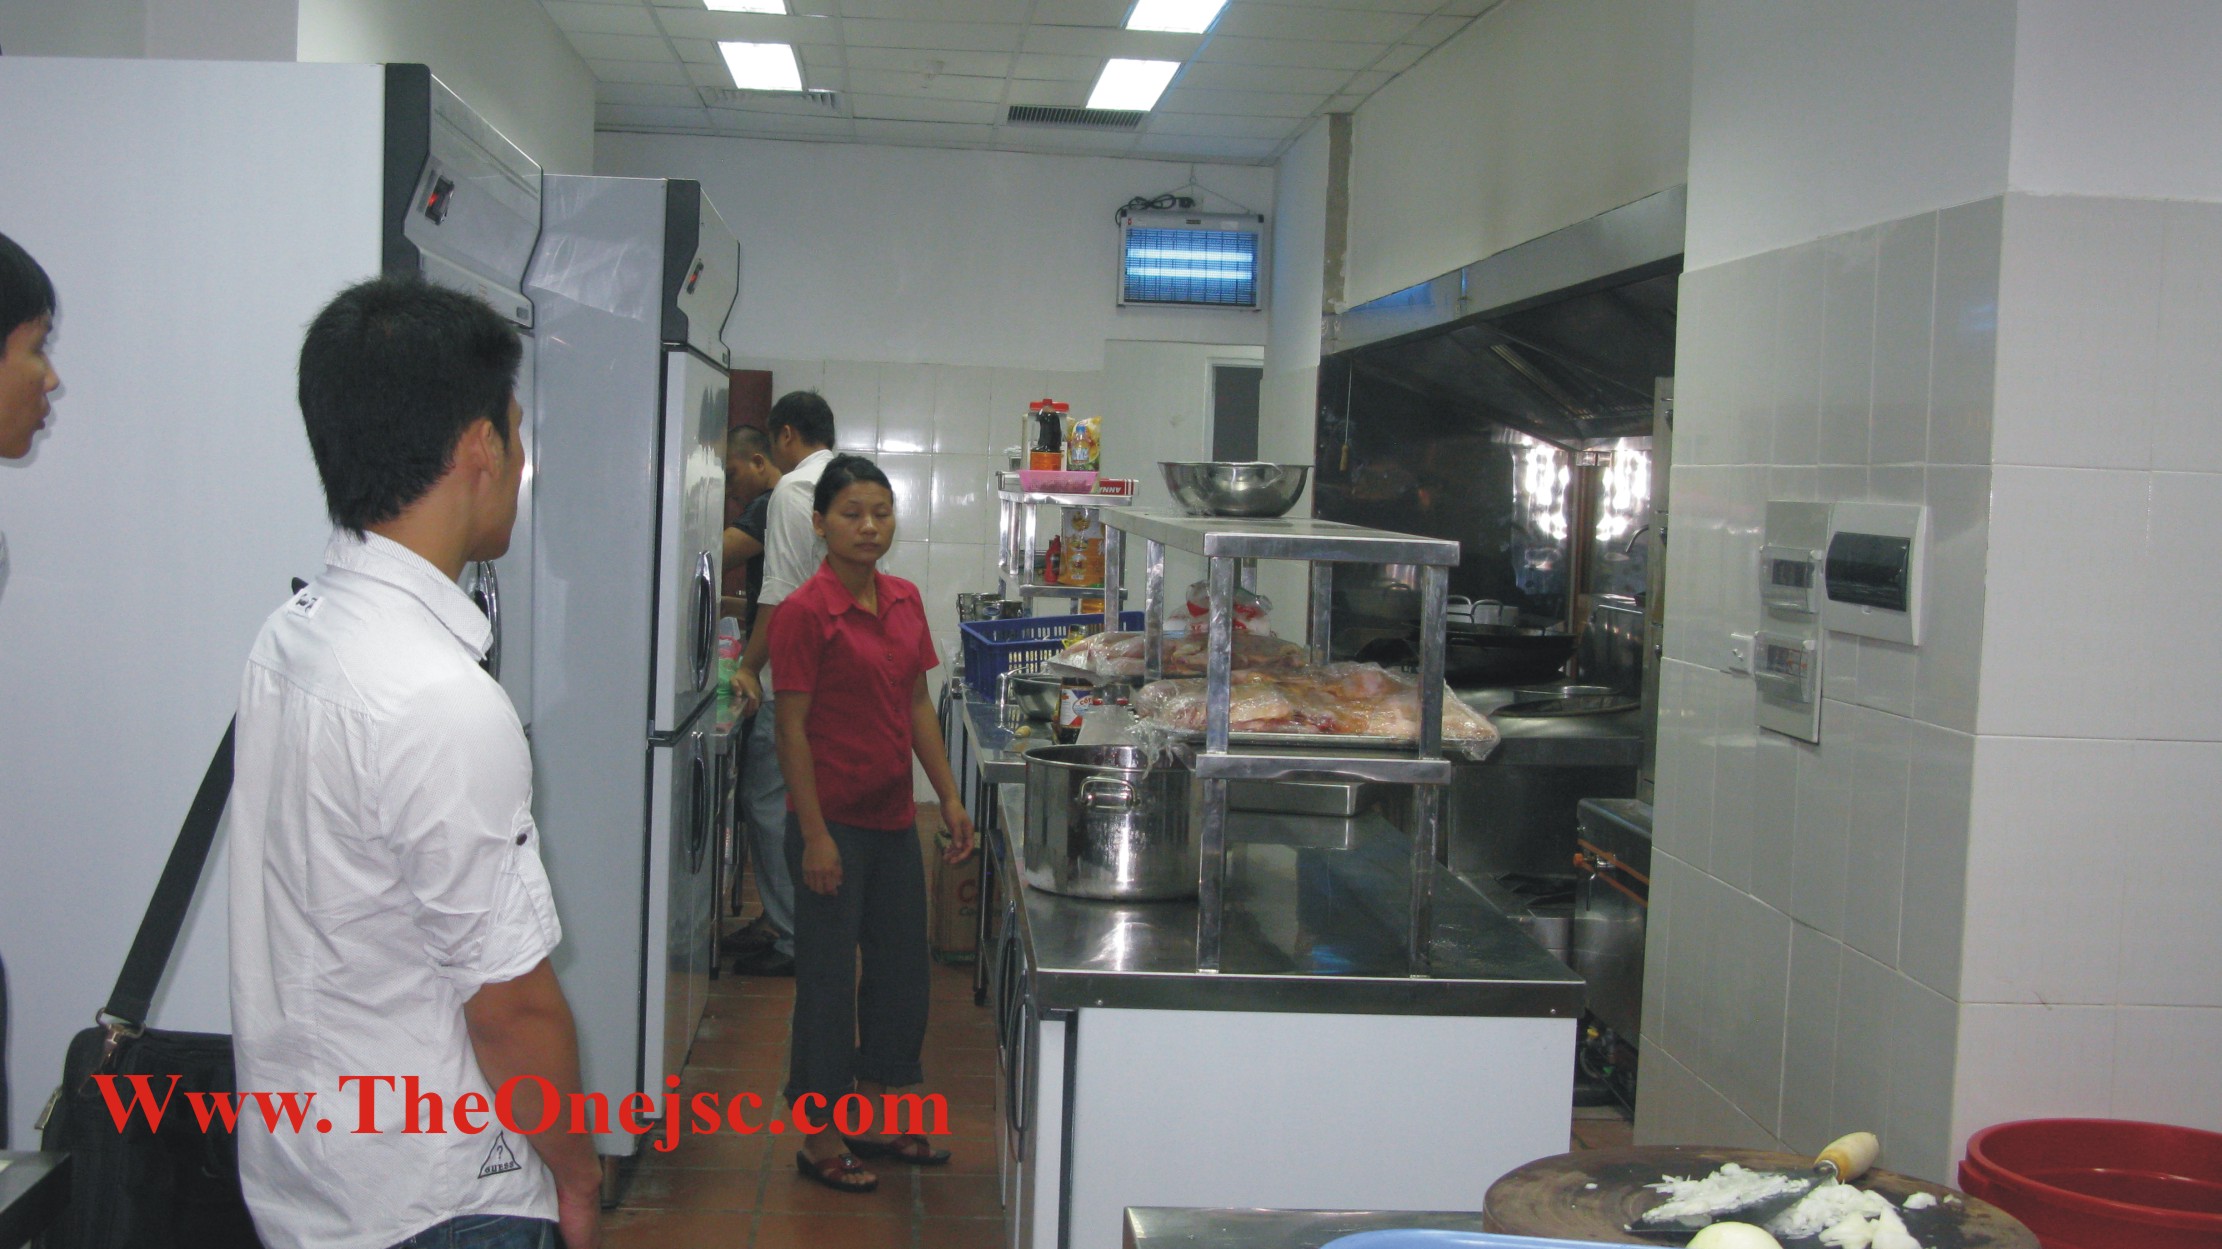 Hệ Thống bếp ăn nhà hàng khách san 12, hệ thốngbếp công nghiệp